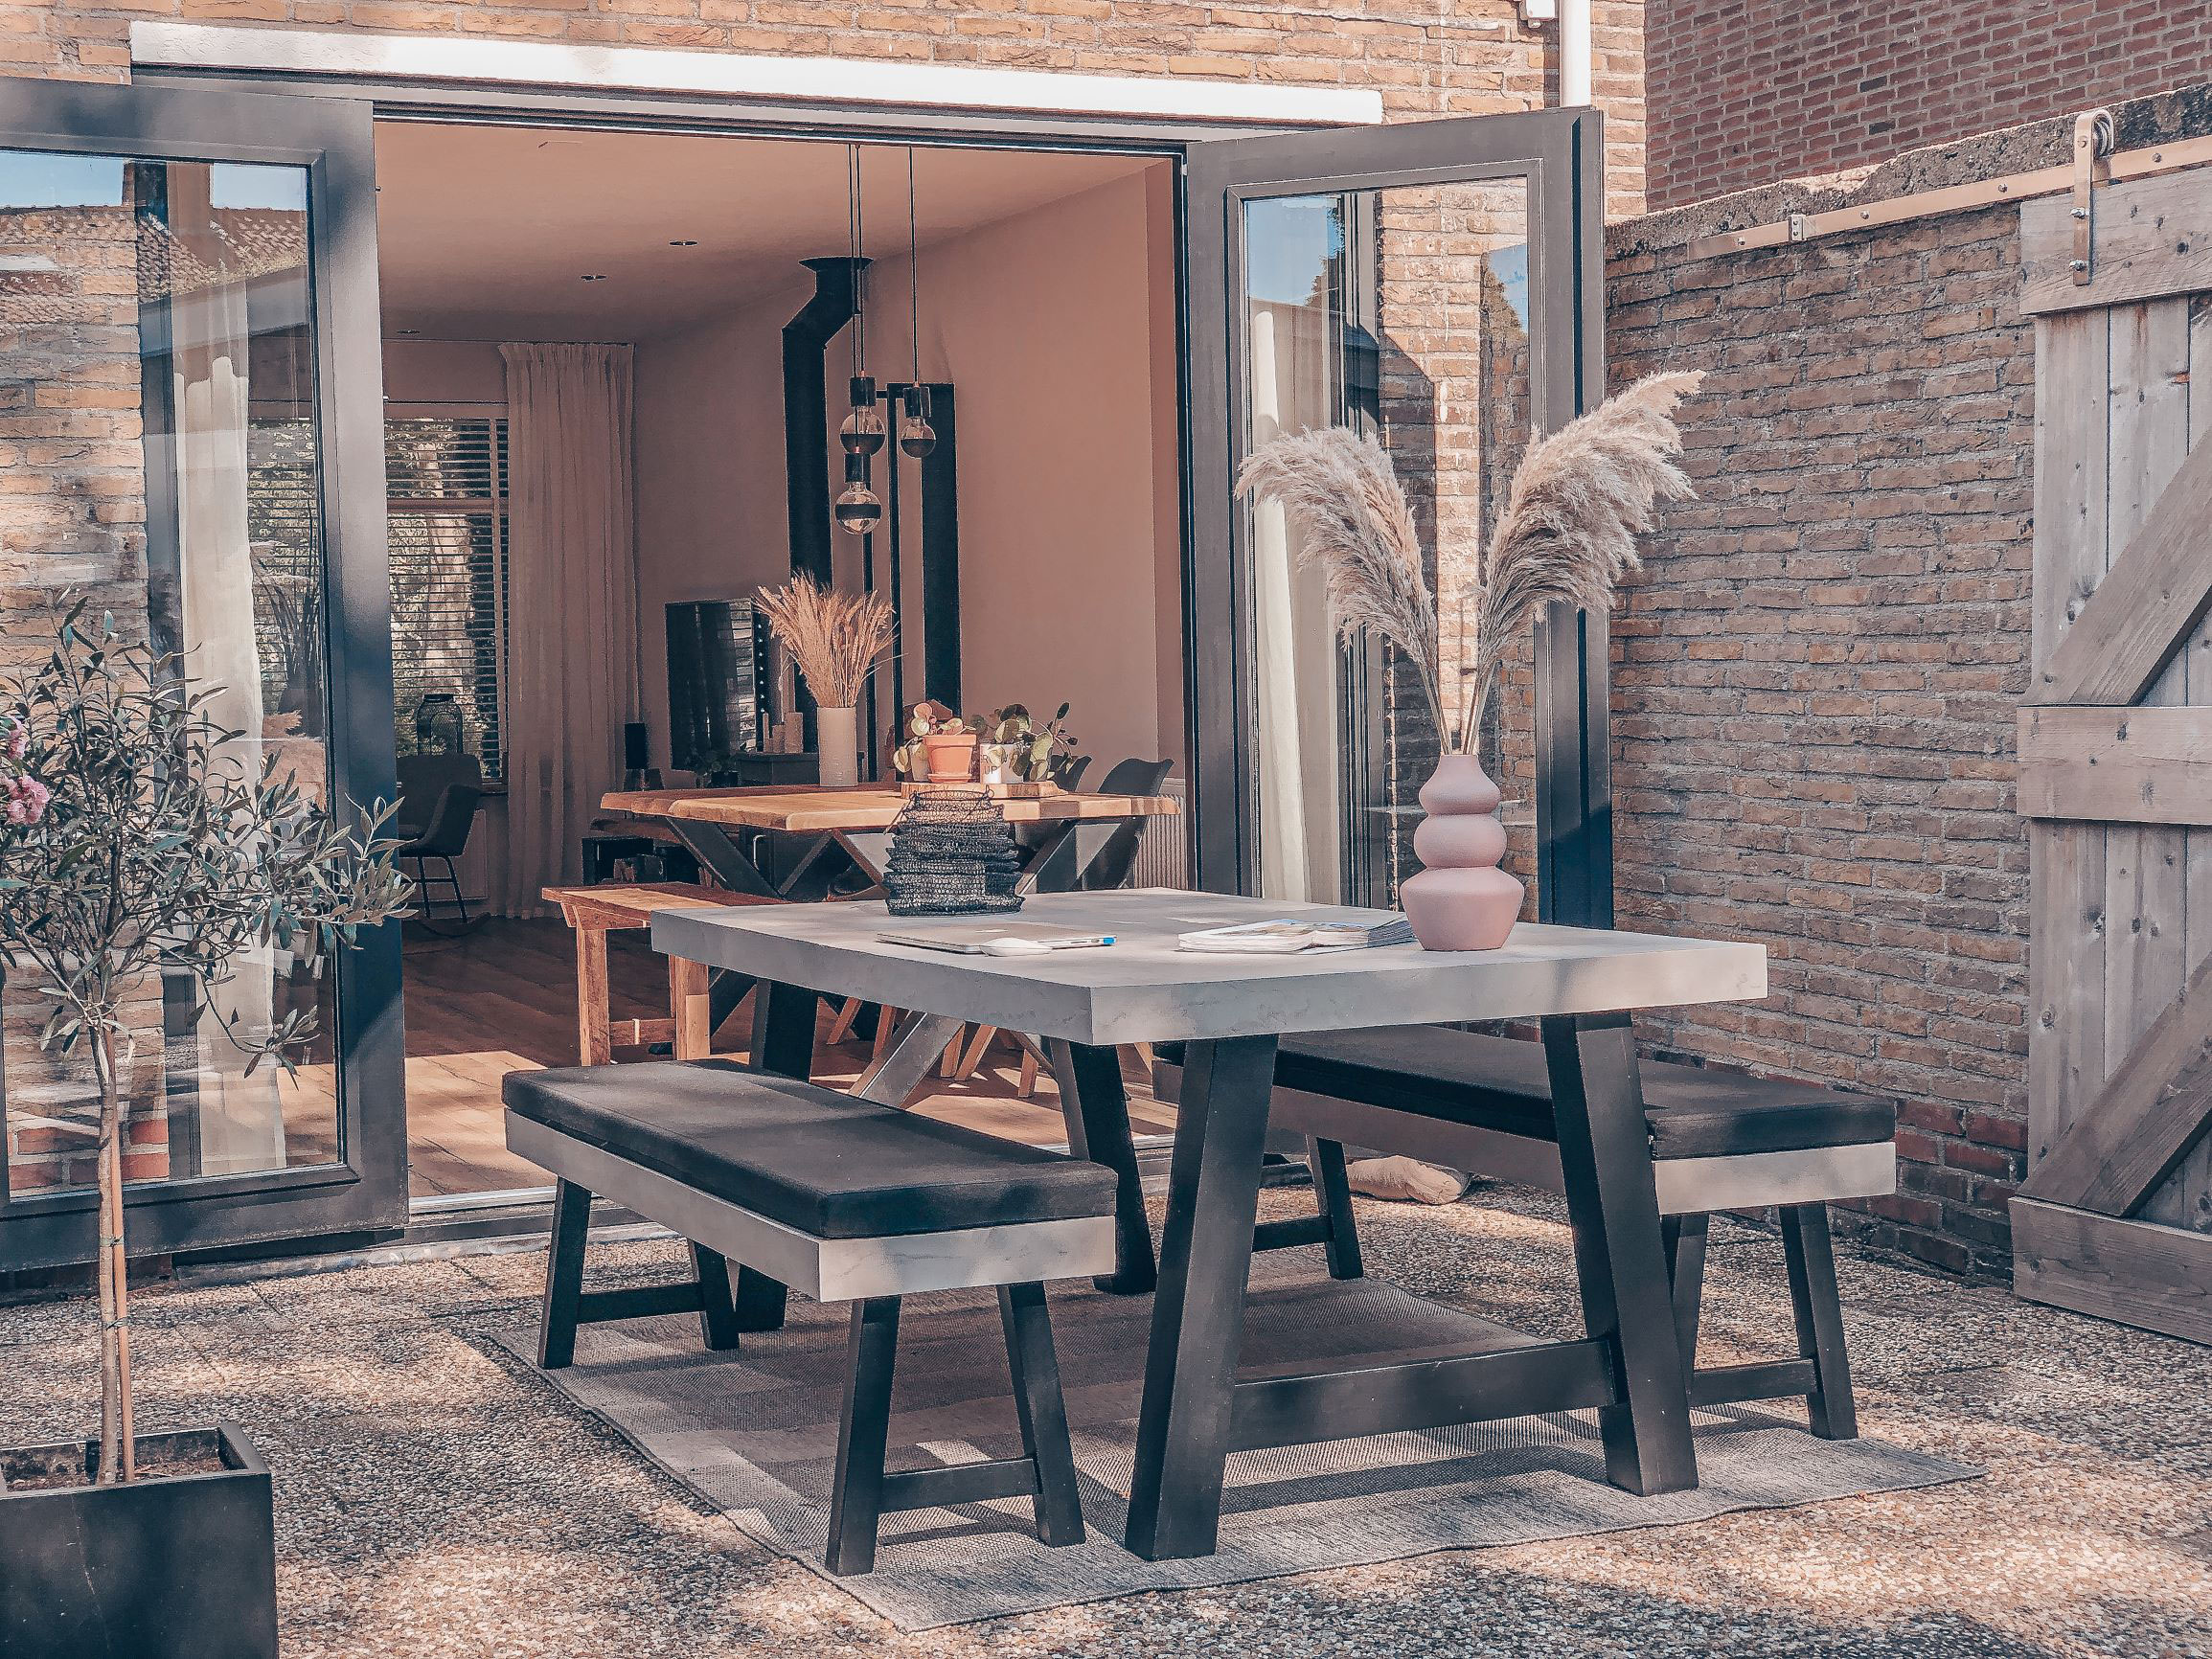 Bukken Samenwerking bloemblad DIY Project (buiten)tafel met beton cire! - Beton Cire Nederland